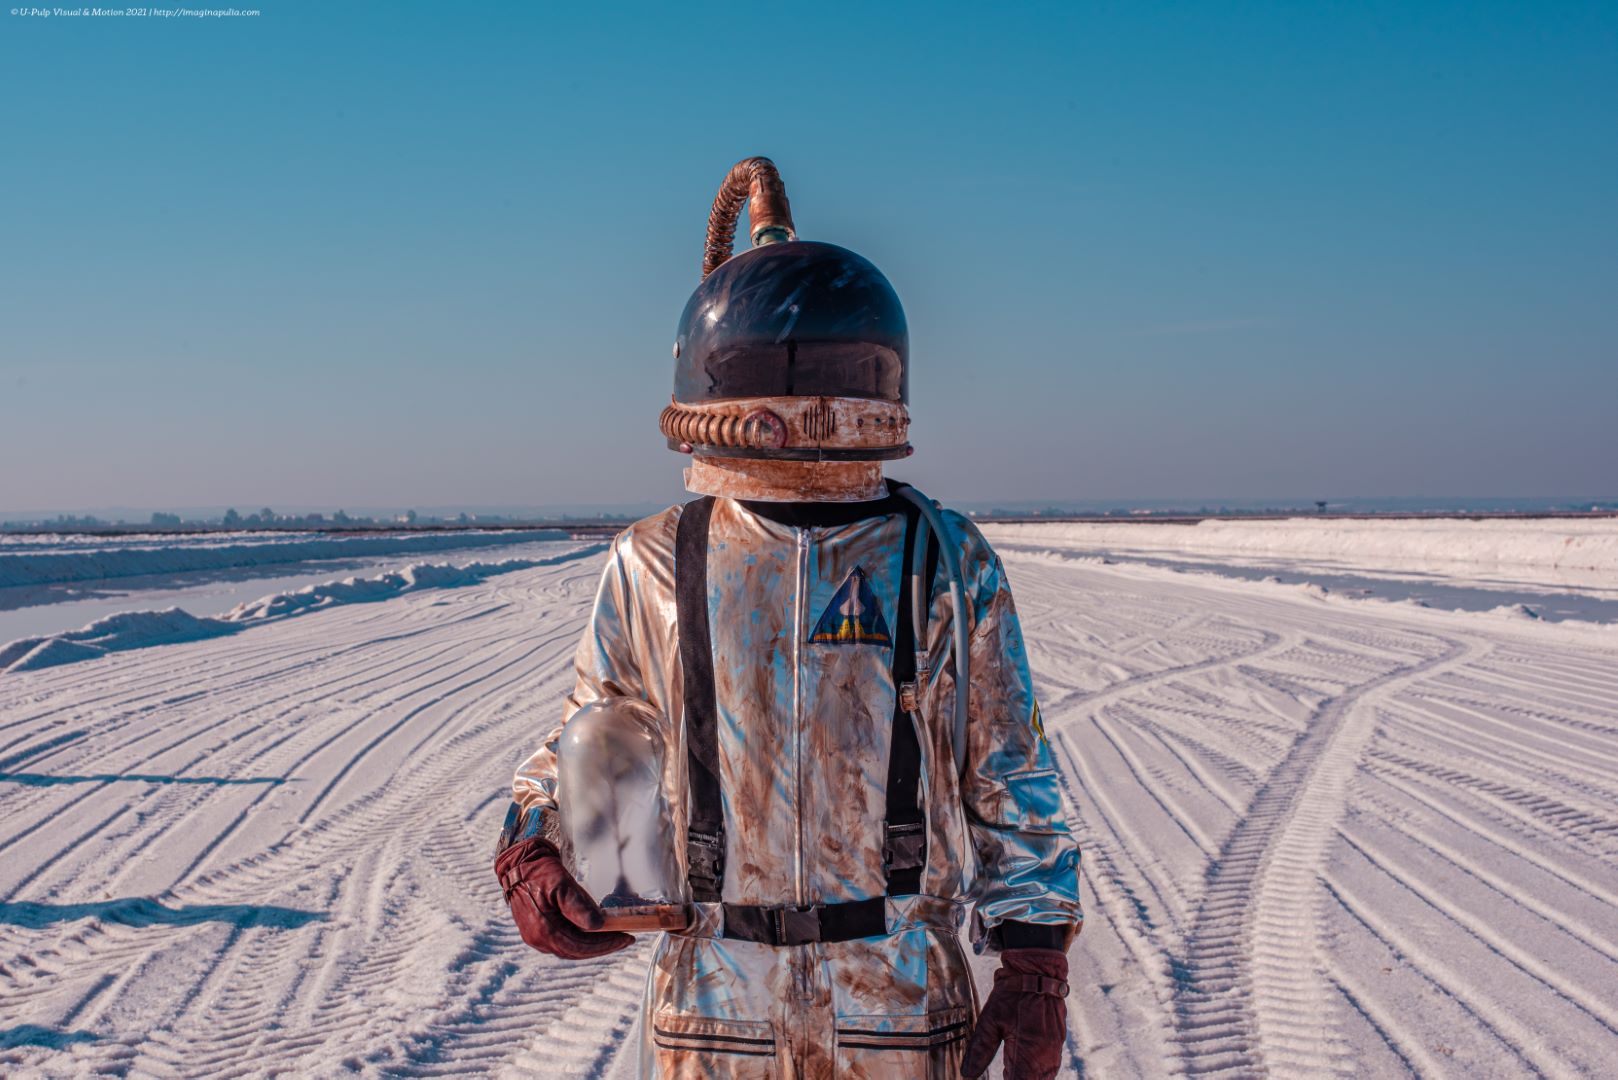 incontro con un astronauta nel paesaggio delle saline di margherita di savoia